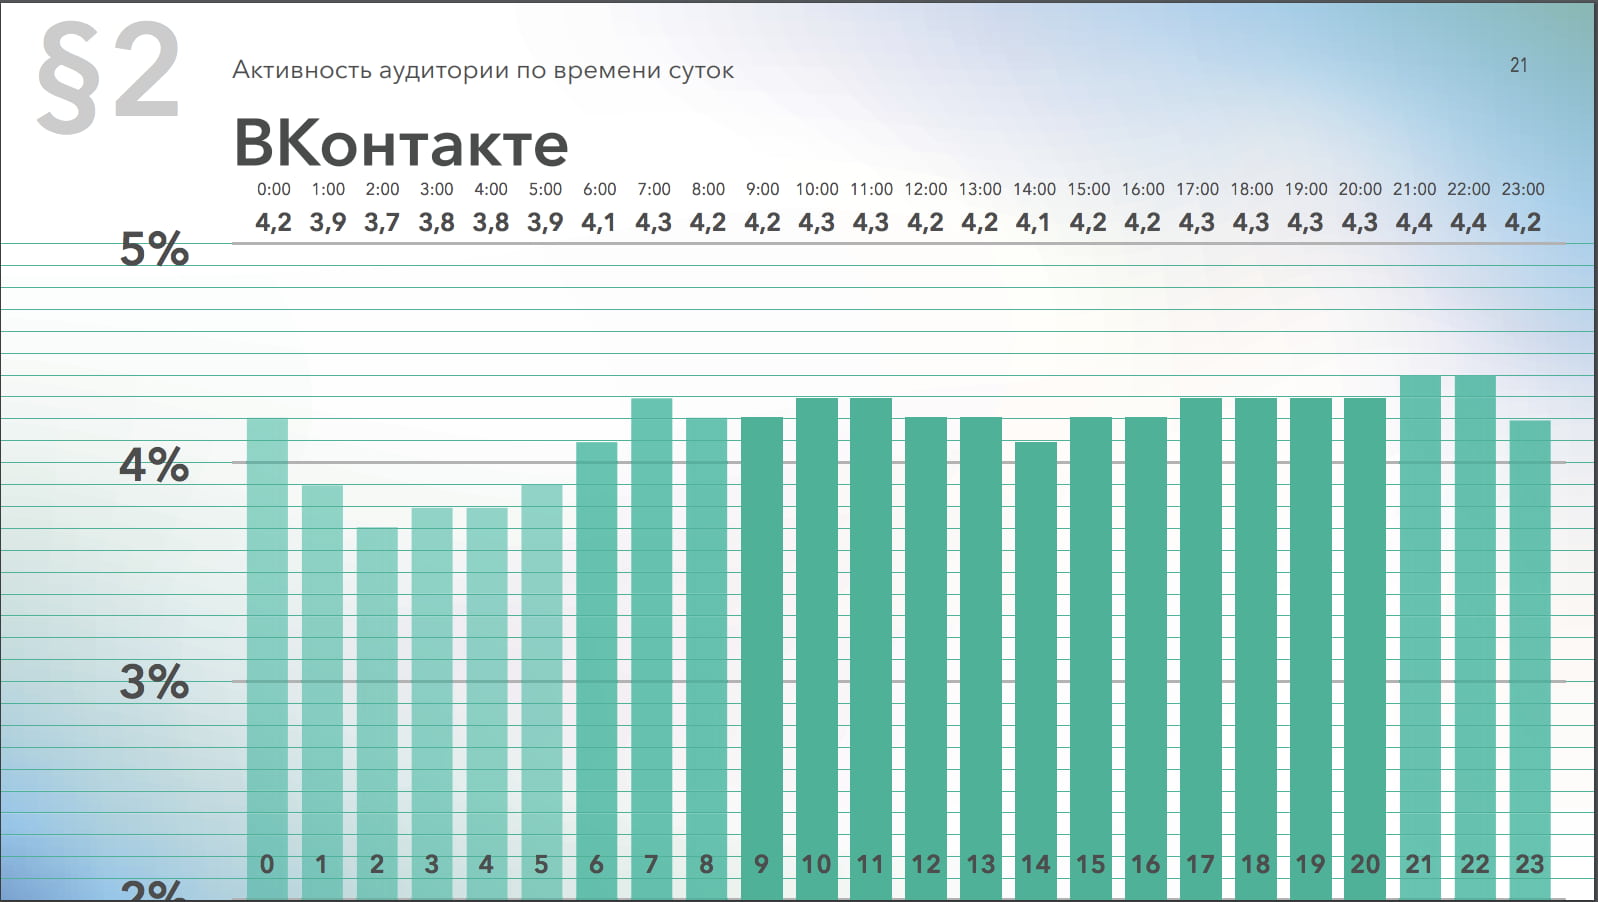 Активность аудитории Вконтакте 21.00-23.00